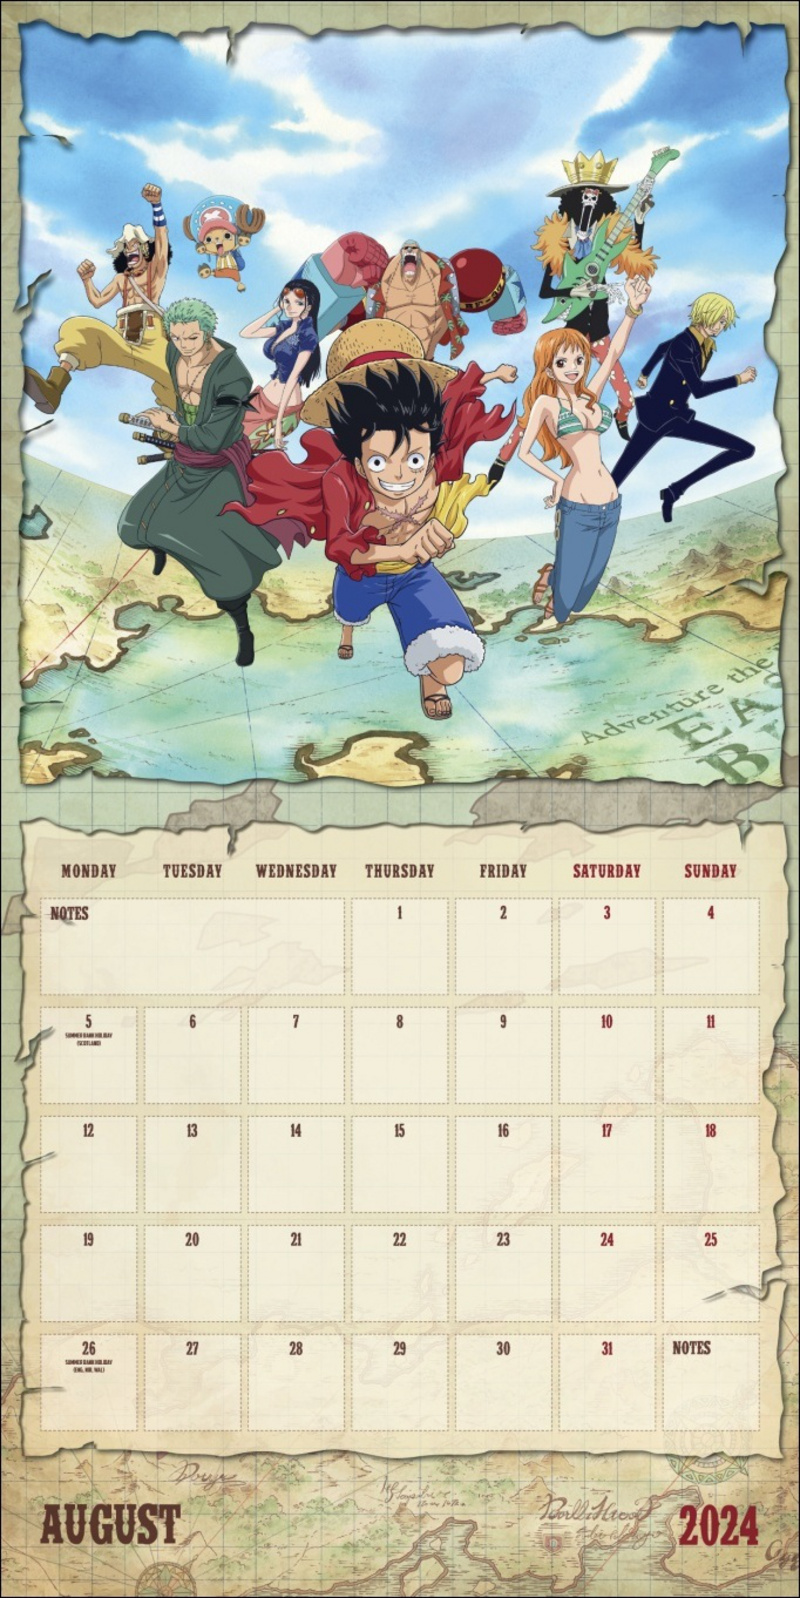 Calendar 2024 One Piece Anime, calendário de animes 2024 